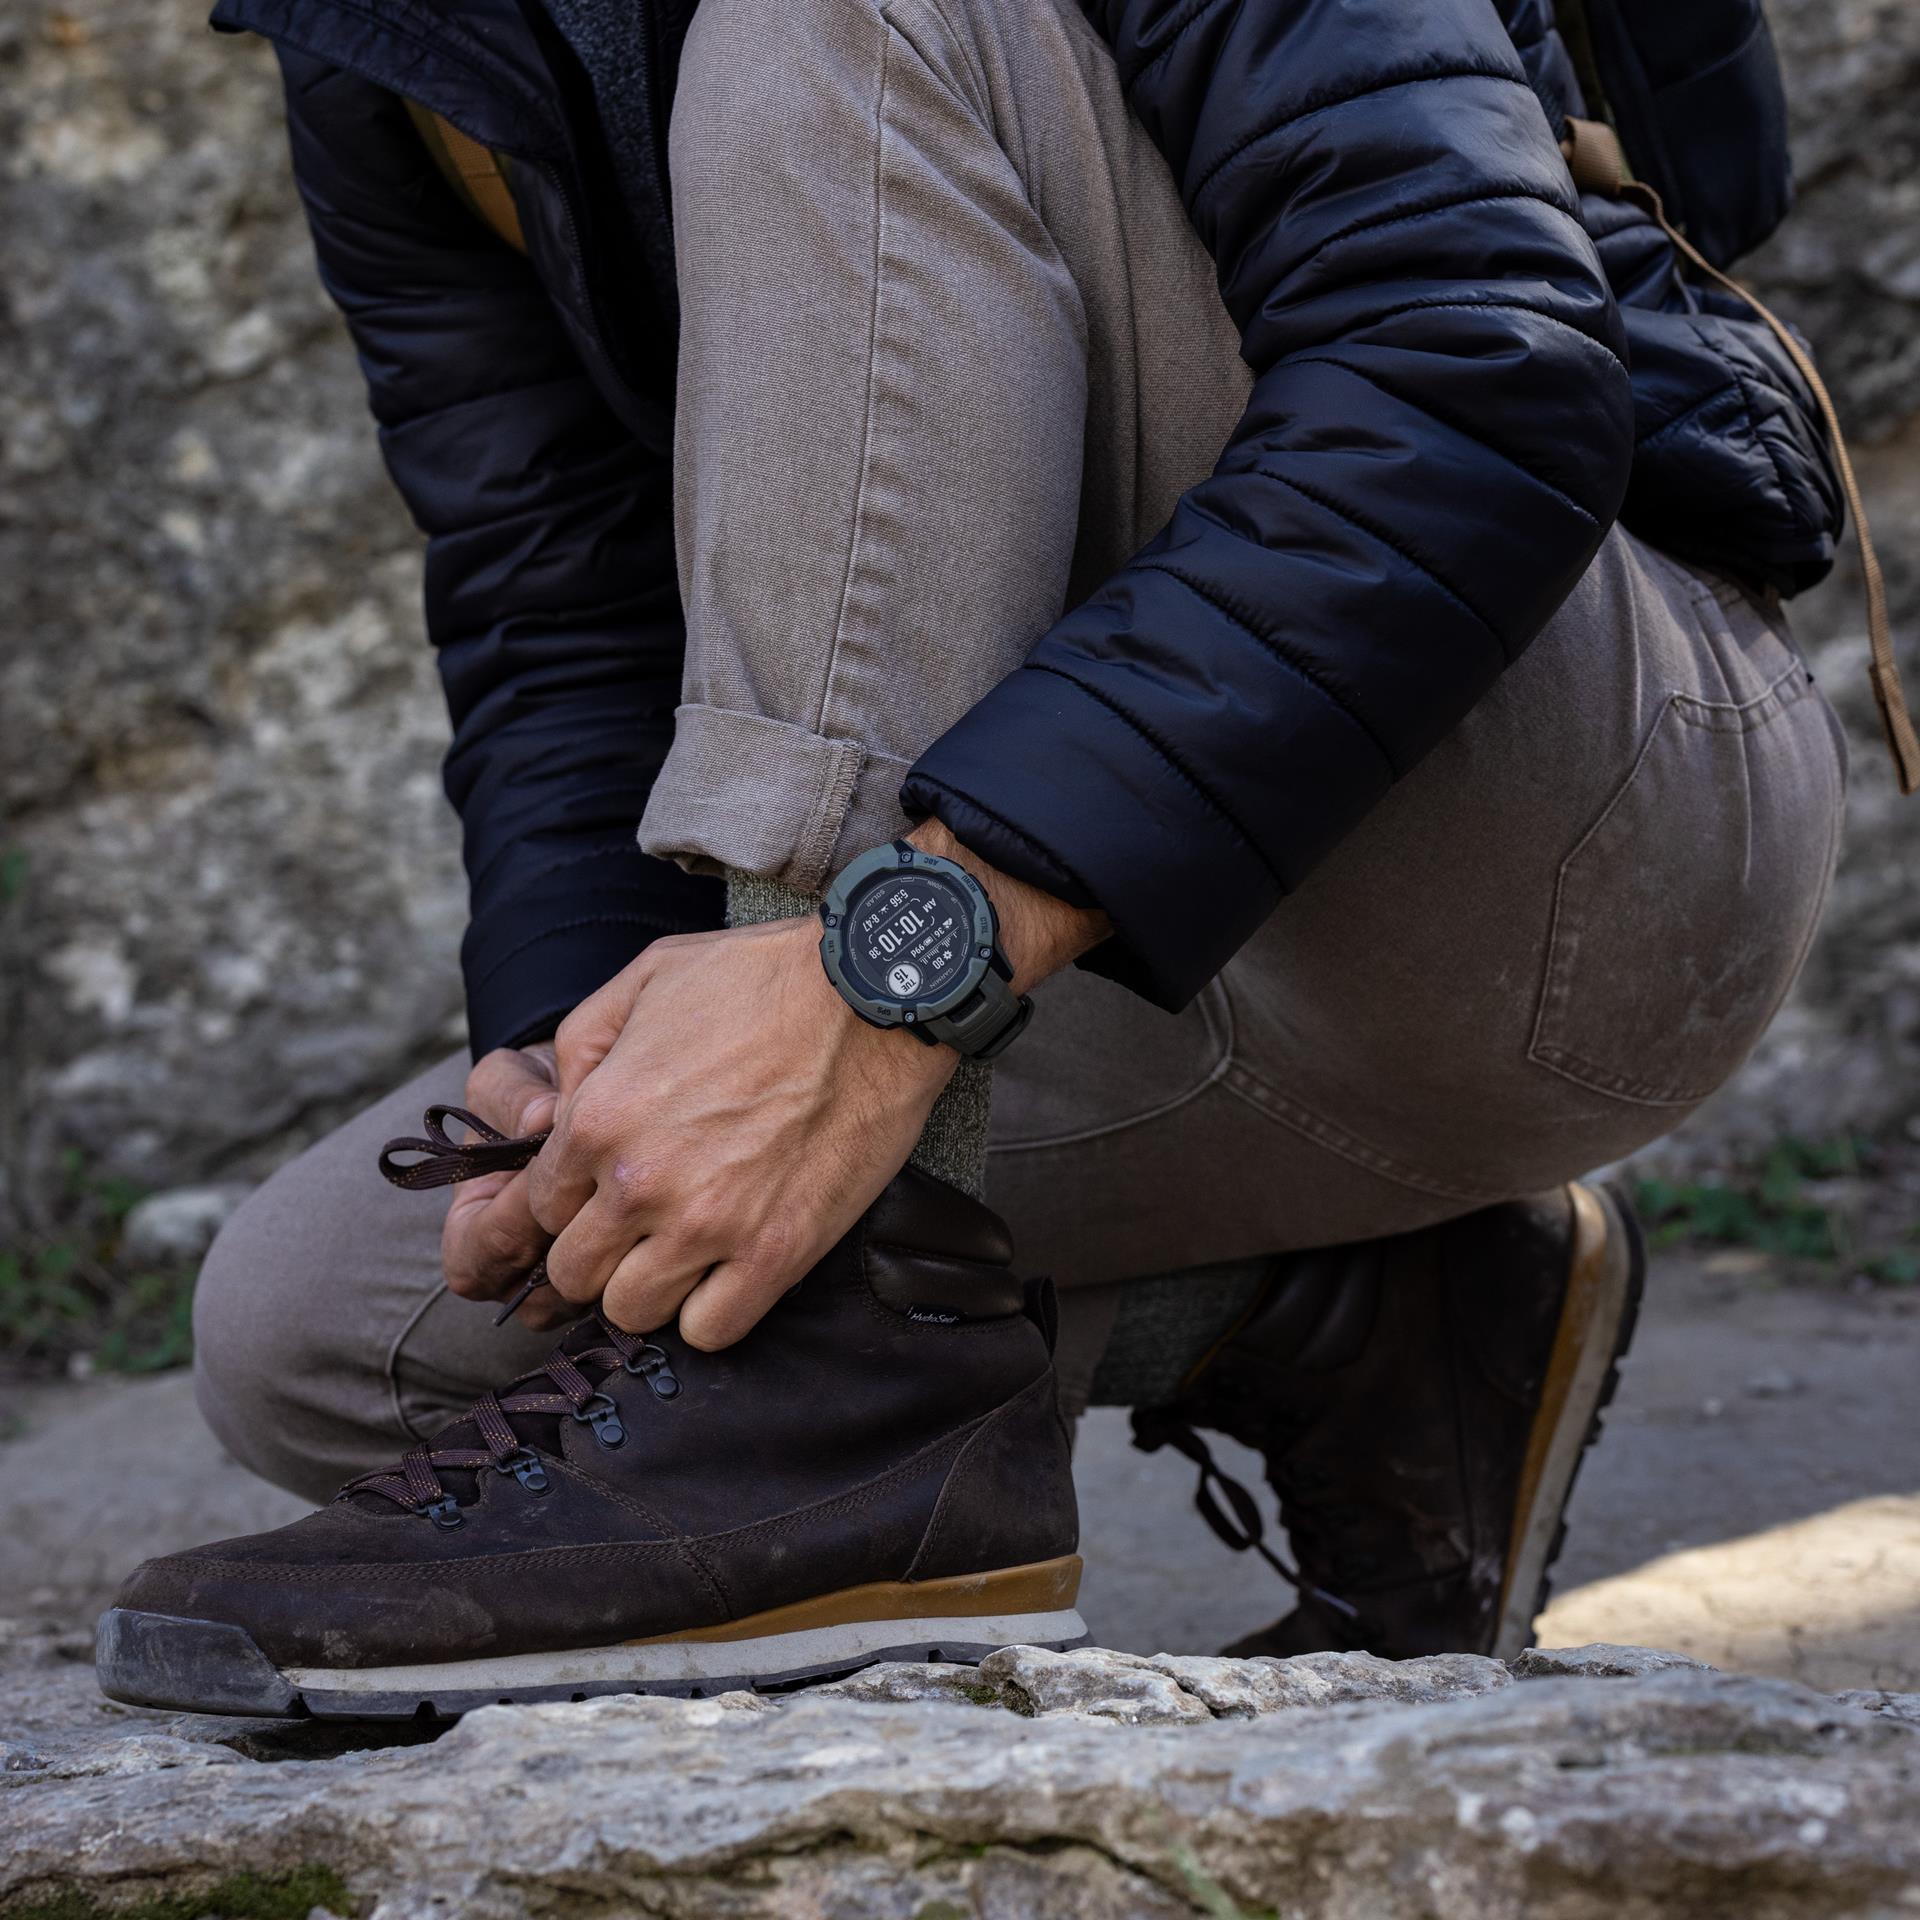 Garmin Instinct 2X Tactical Solar Смарт-часы, 50 mm, черные